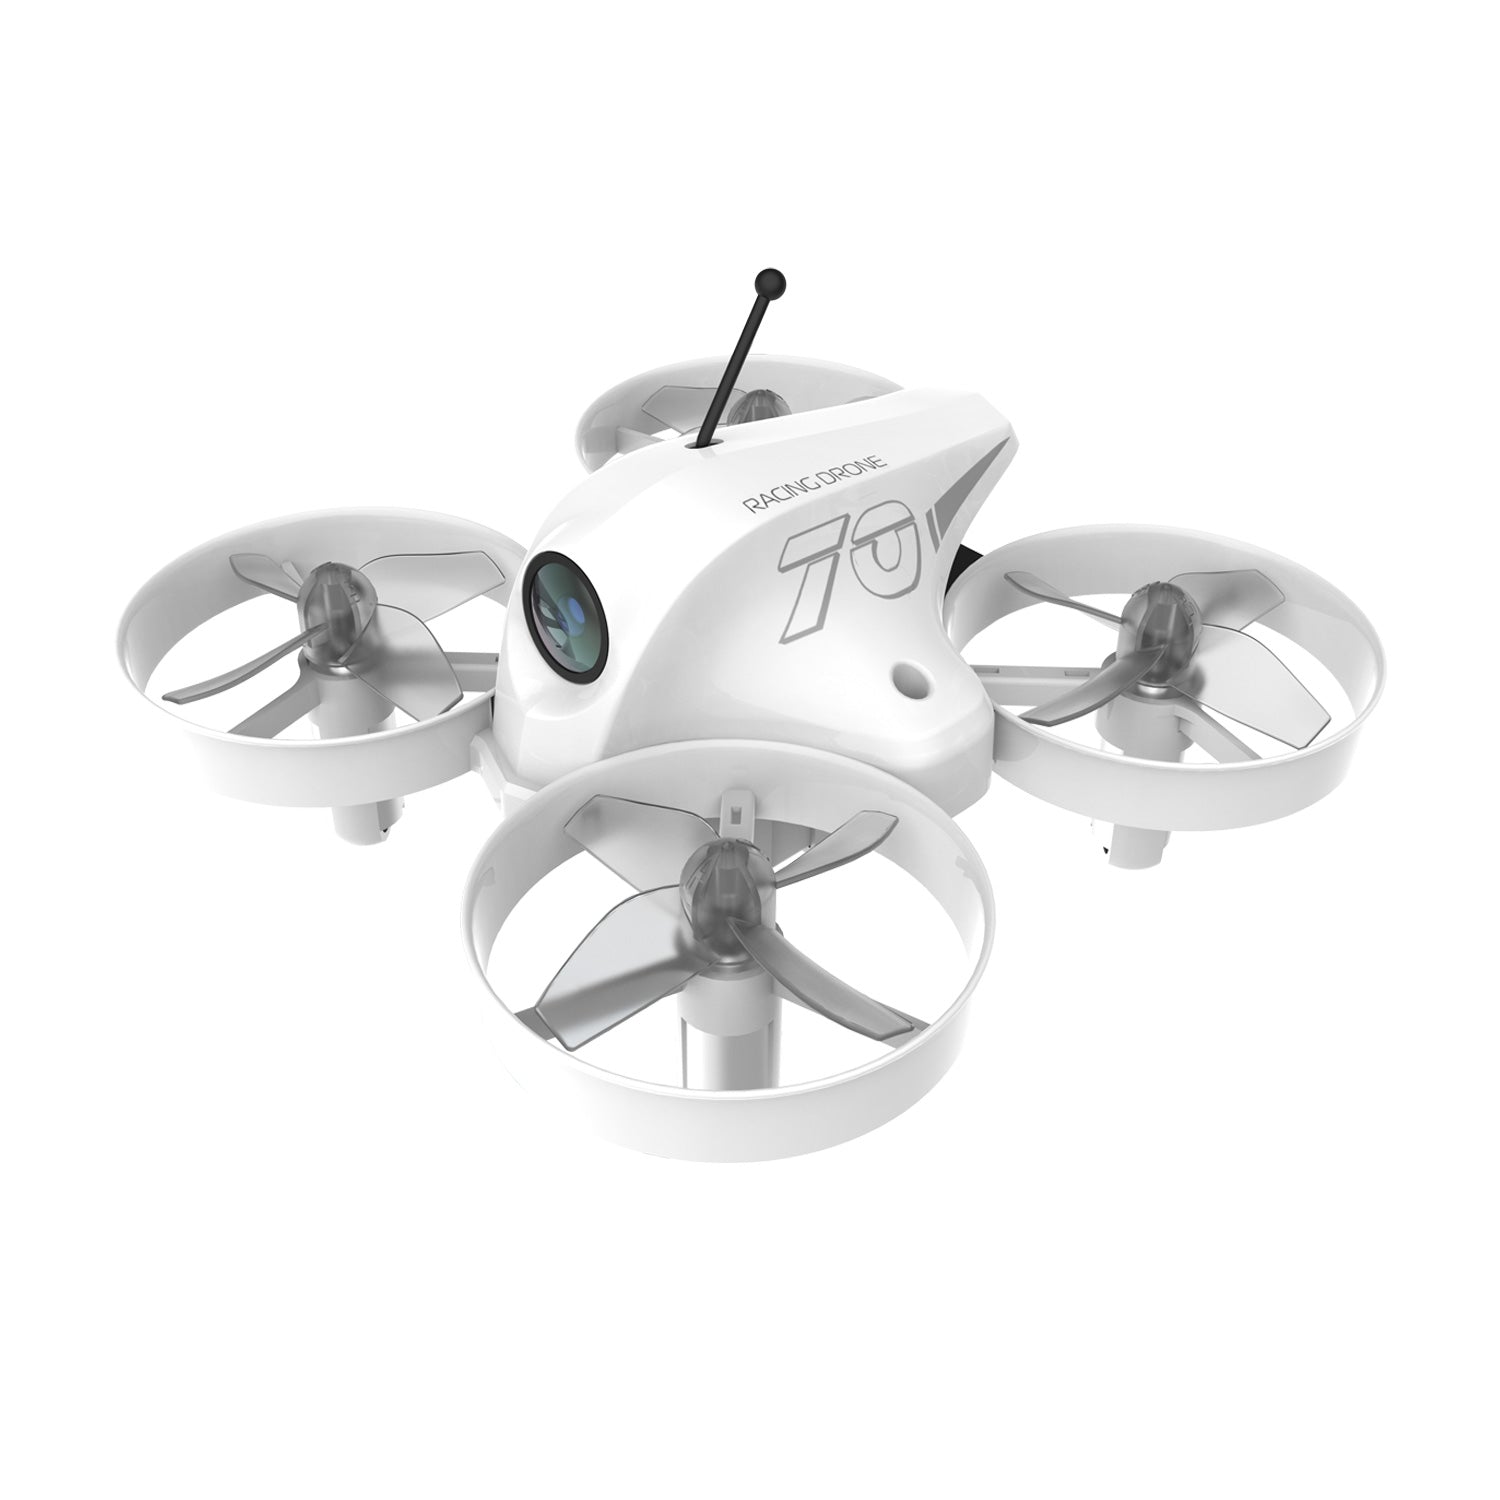 APEX VR70 Drone Single drone, No – APEX Drone